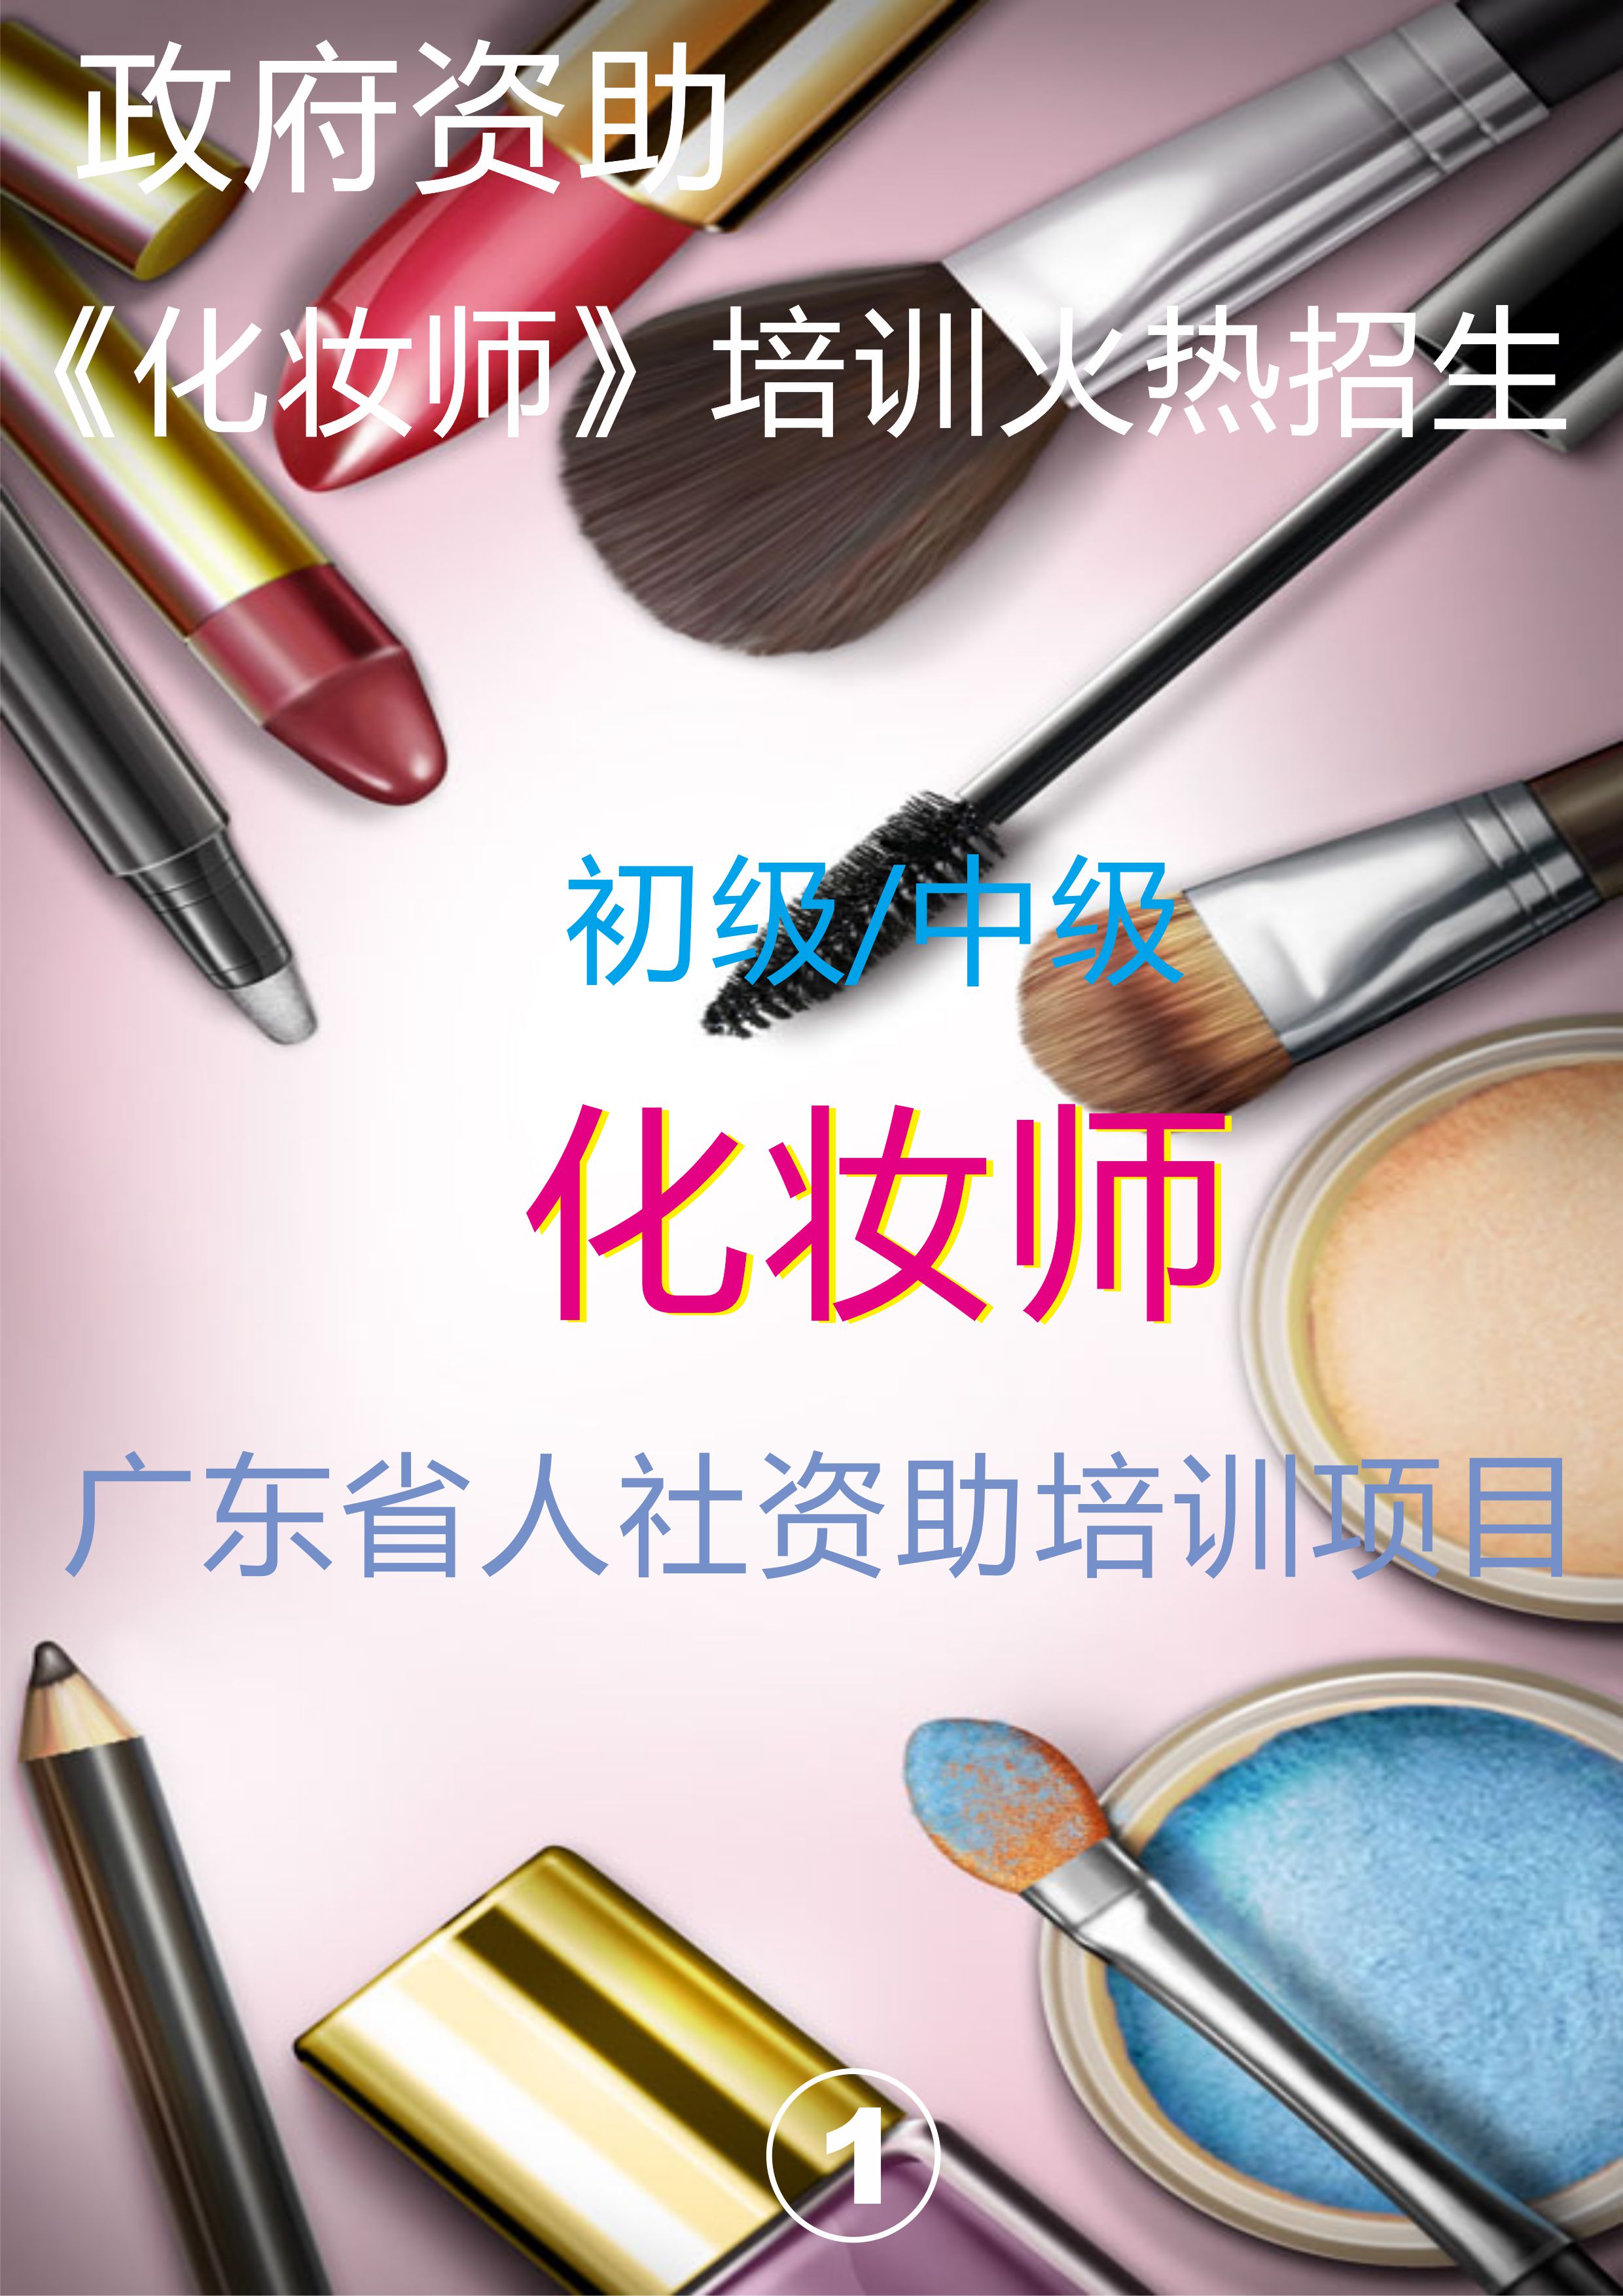 广州化妆师培训要多少钱 哪个培训机构便宜 拿证快